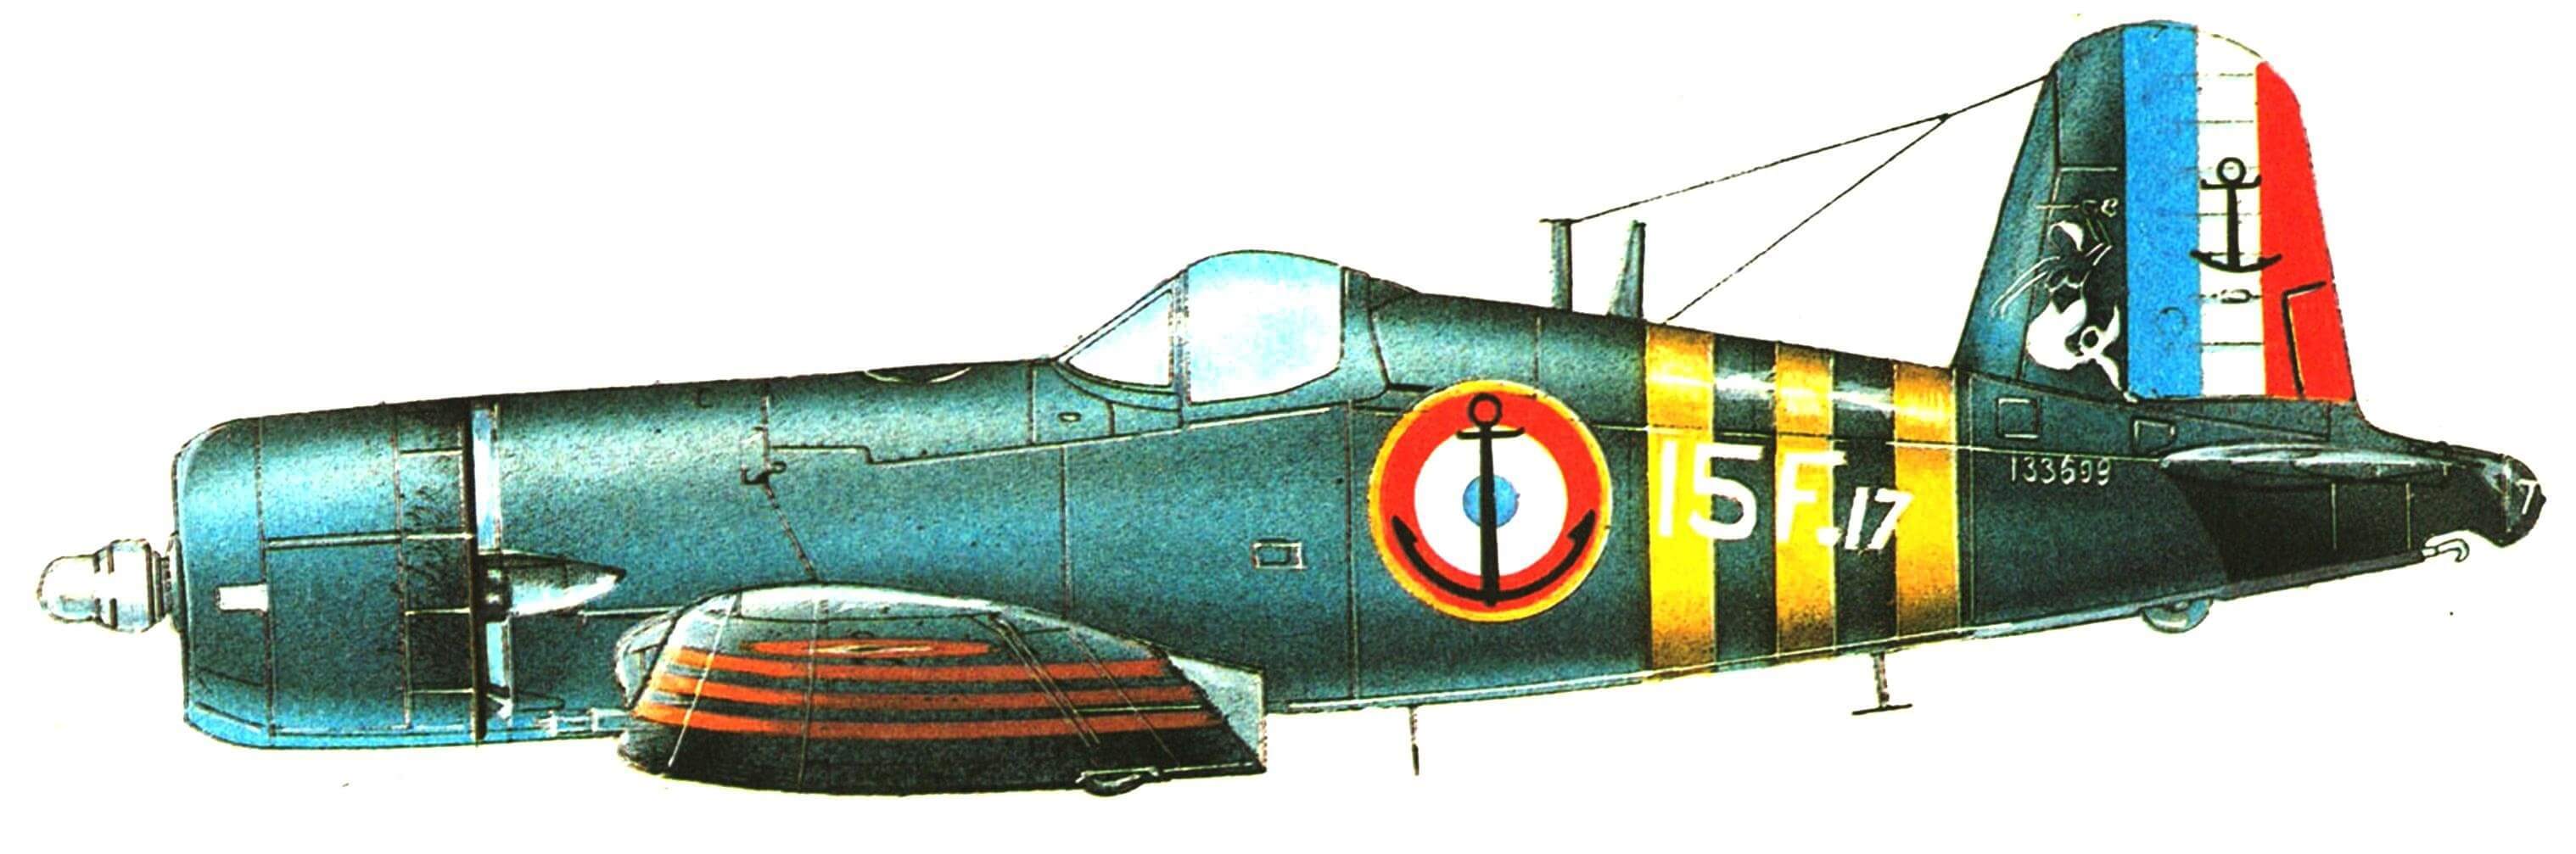 F4U-7. Флотилия 15F, авиация ВМС Франции. Суэц, 1956 год.